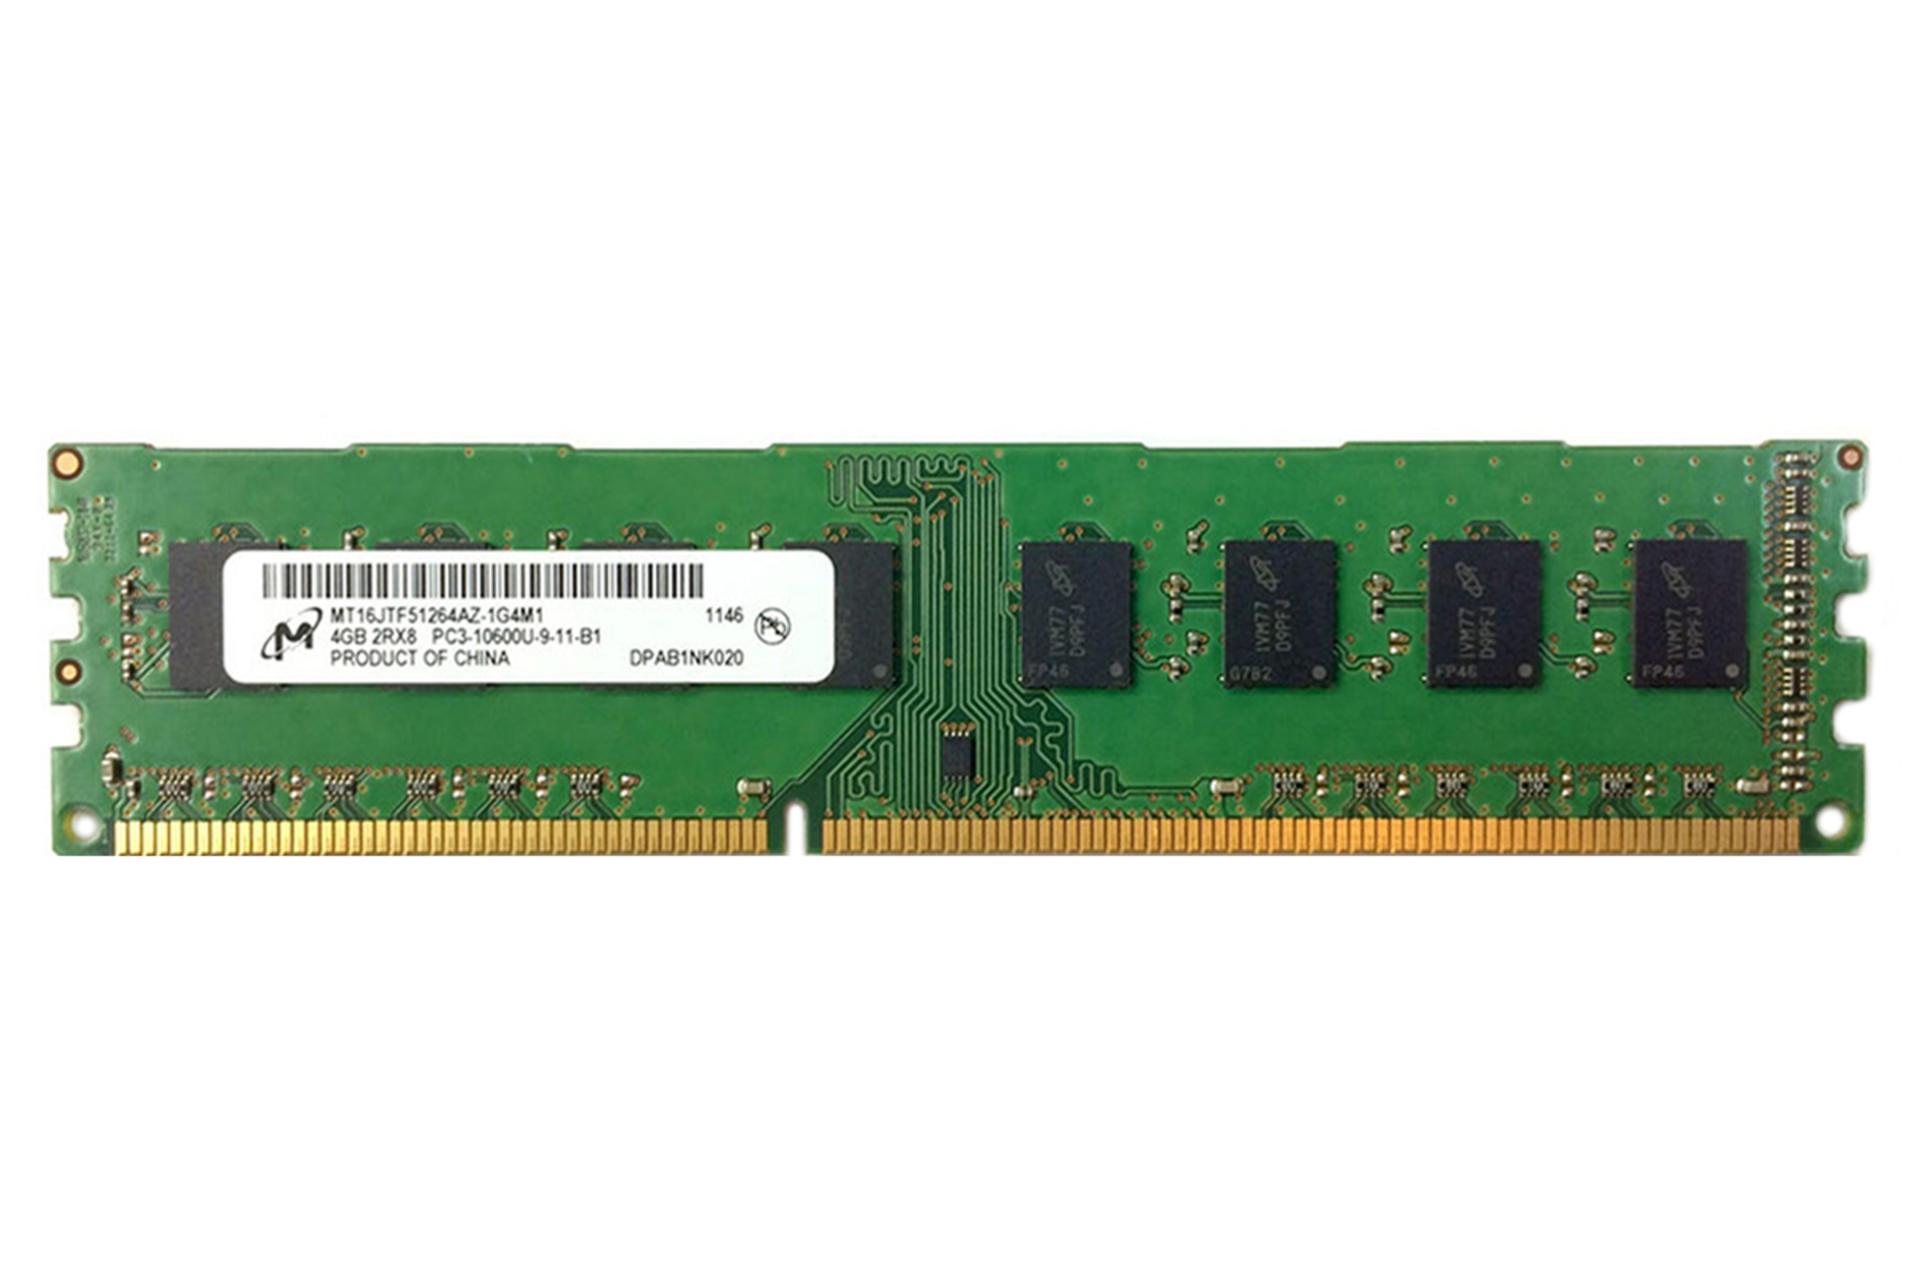 رم مایکرون MT16JTF51264AZ-1G4M1 ظرفیت 4 گیگابایت از نوع DDR3-1333